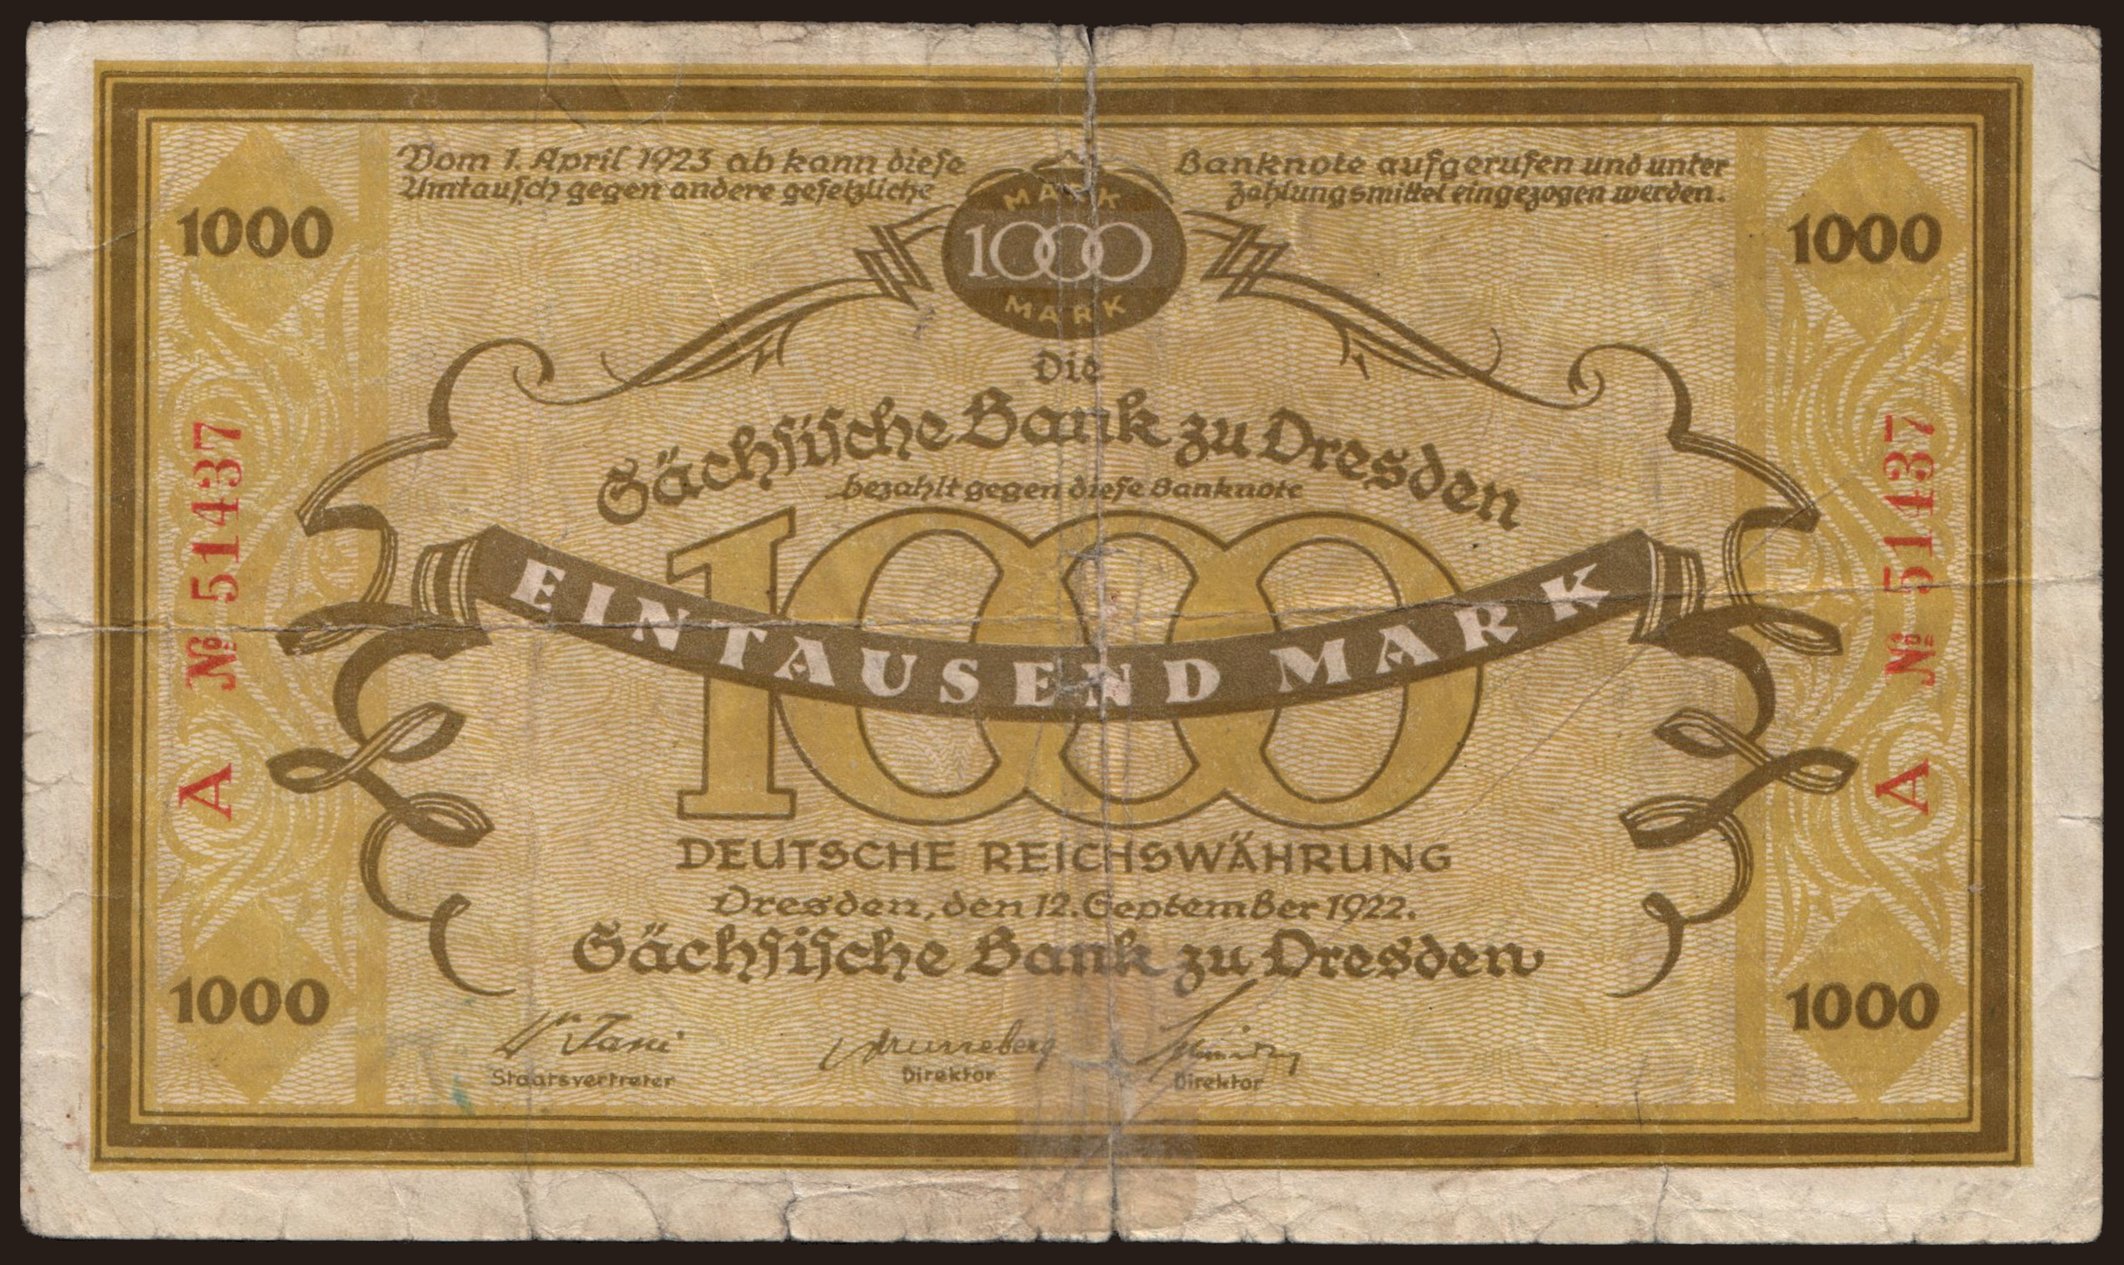 Sächsische Bank zu Dresden, 1000 Mark, 1922